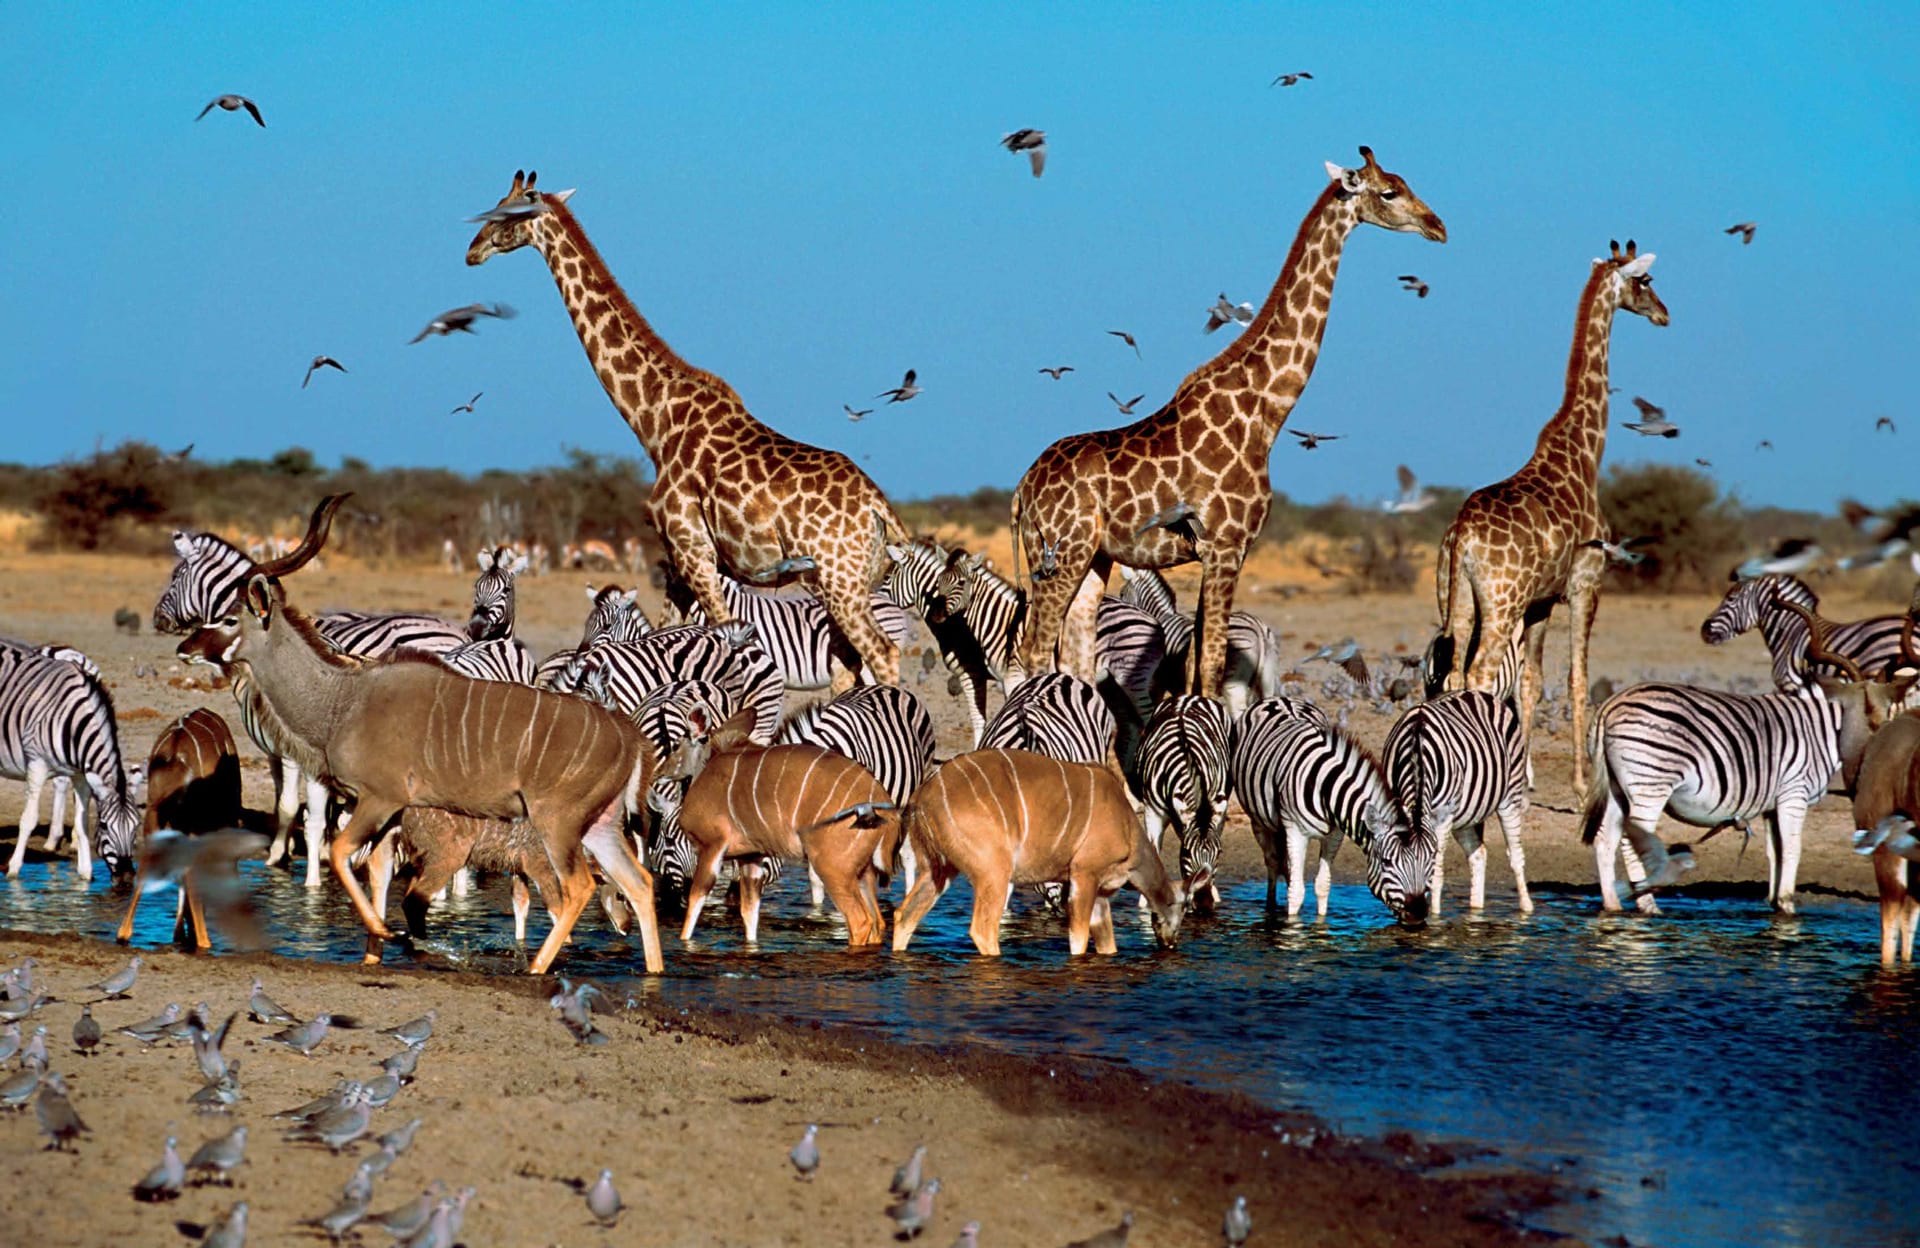 the mikado grand safari